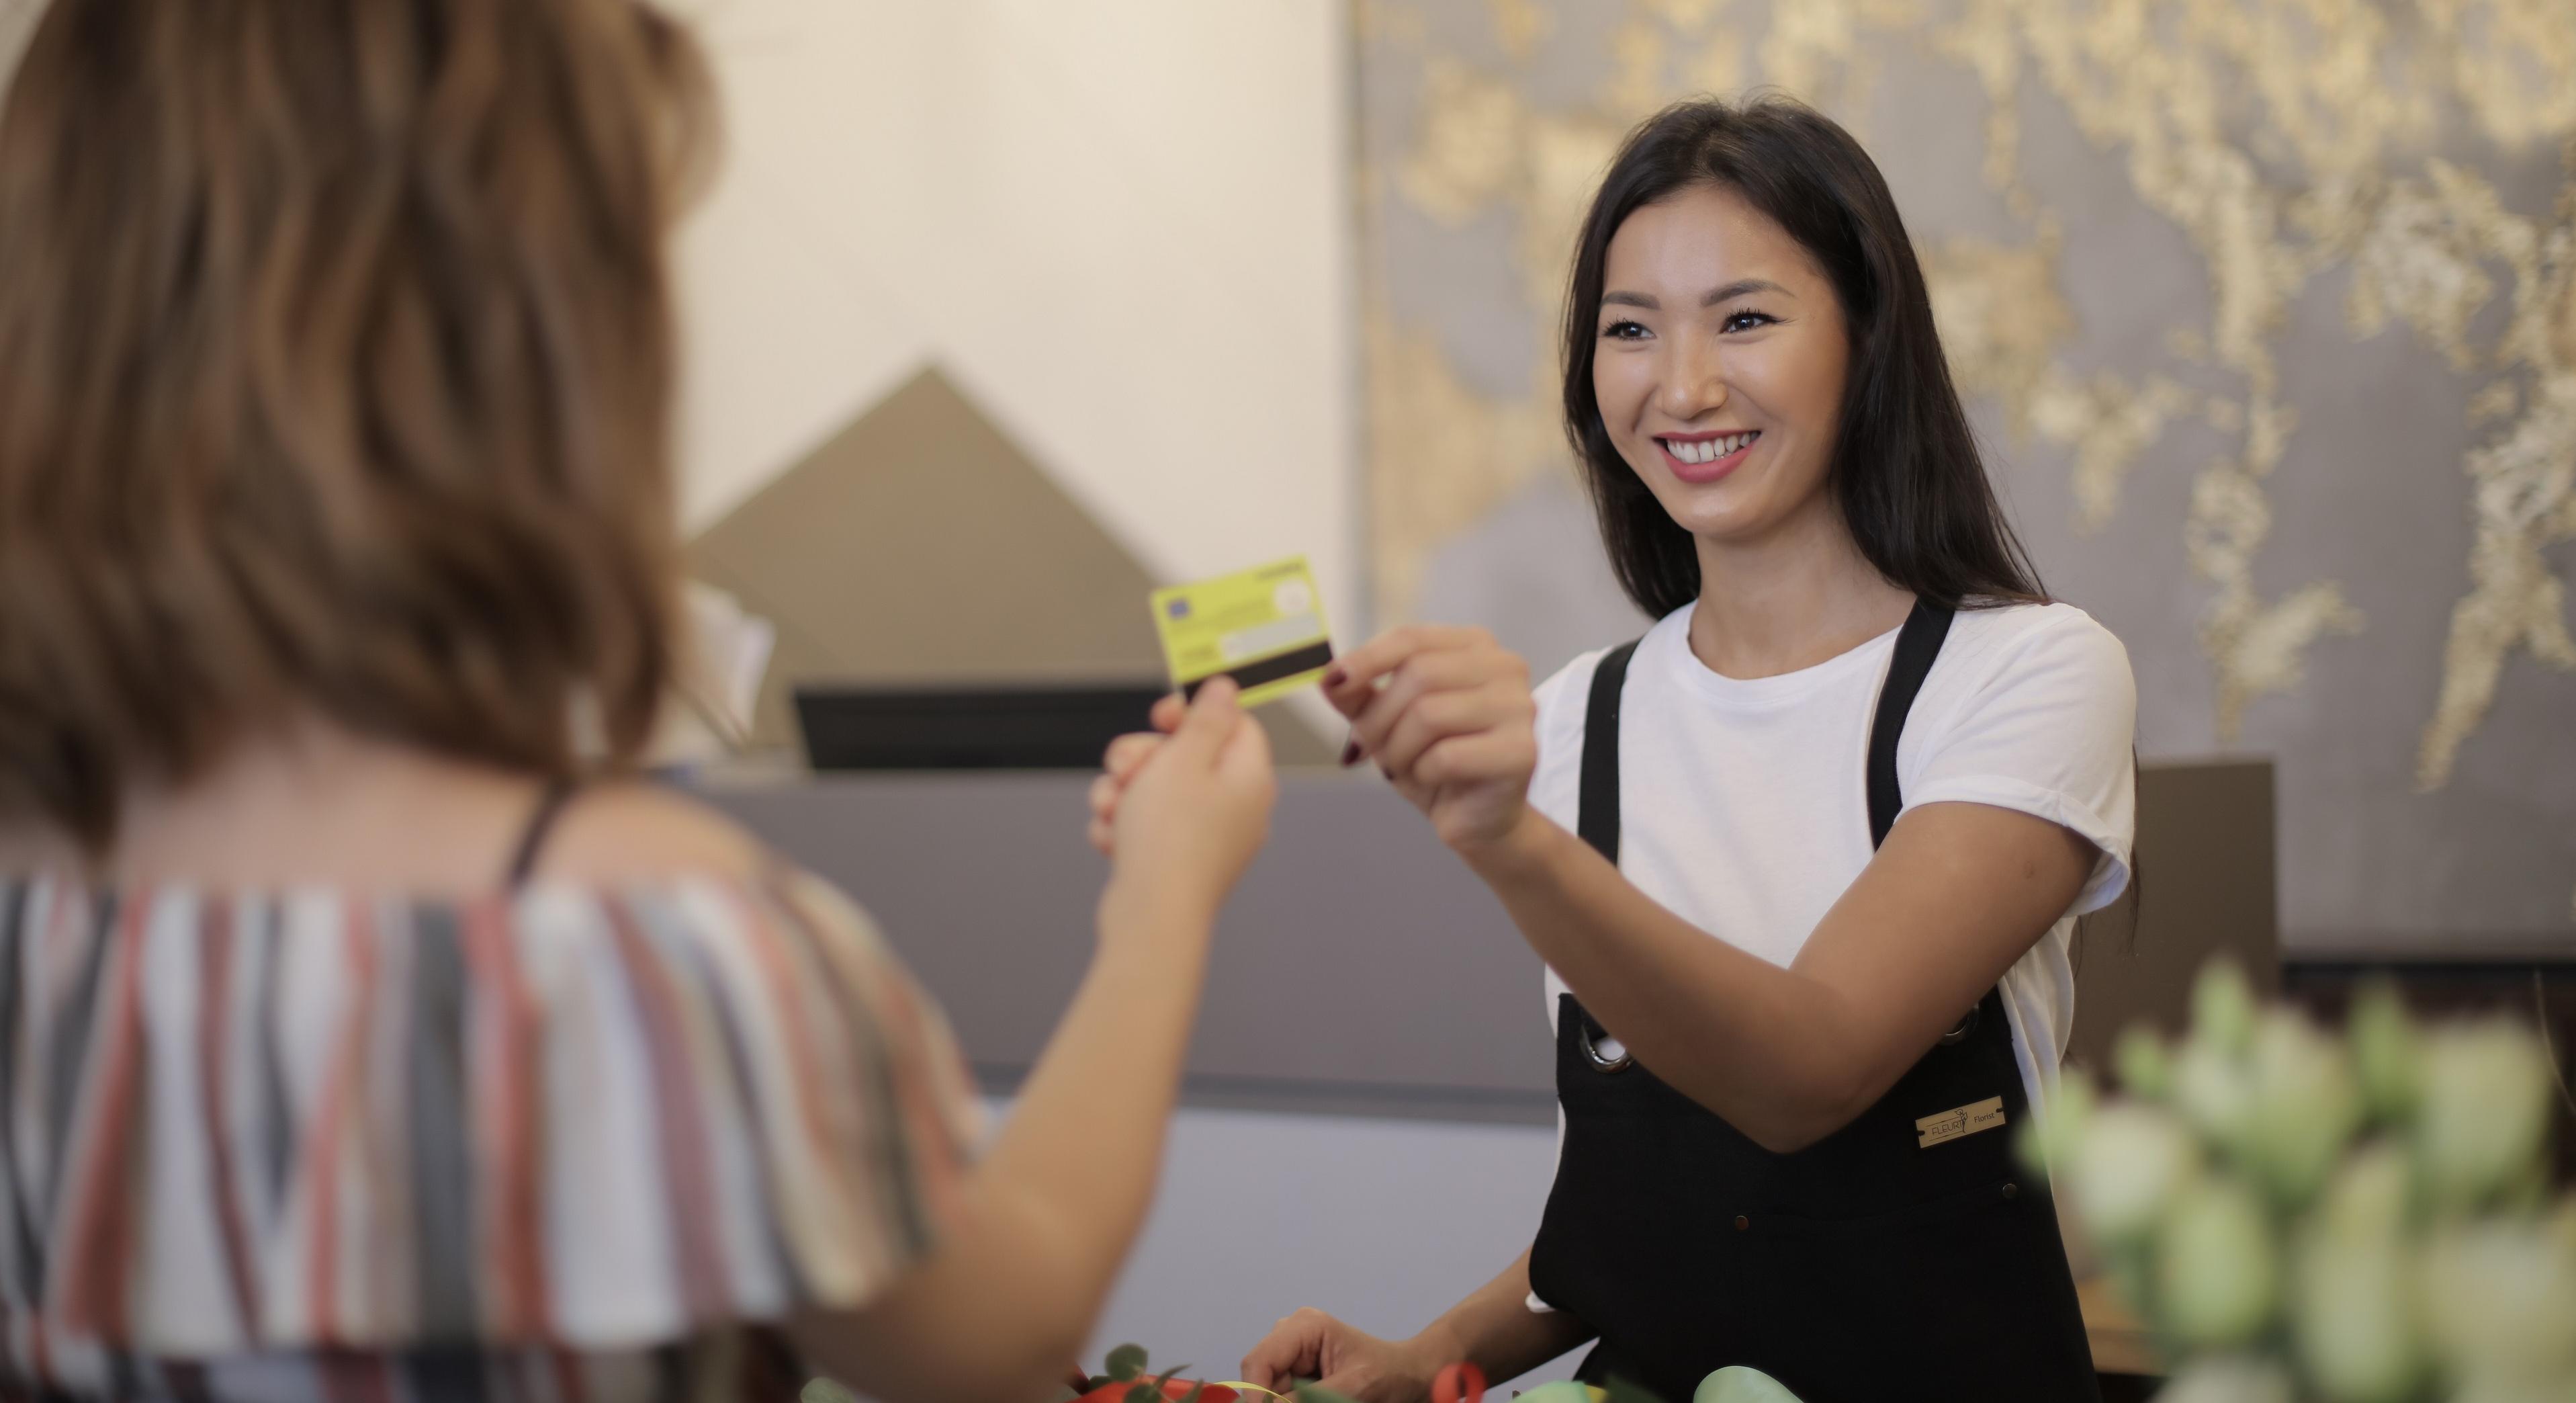 woman handing clerk credit card